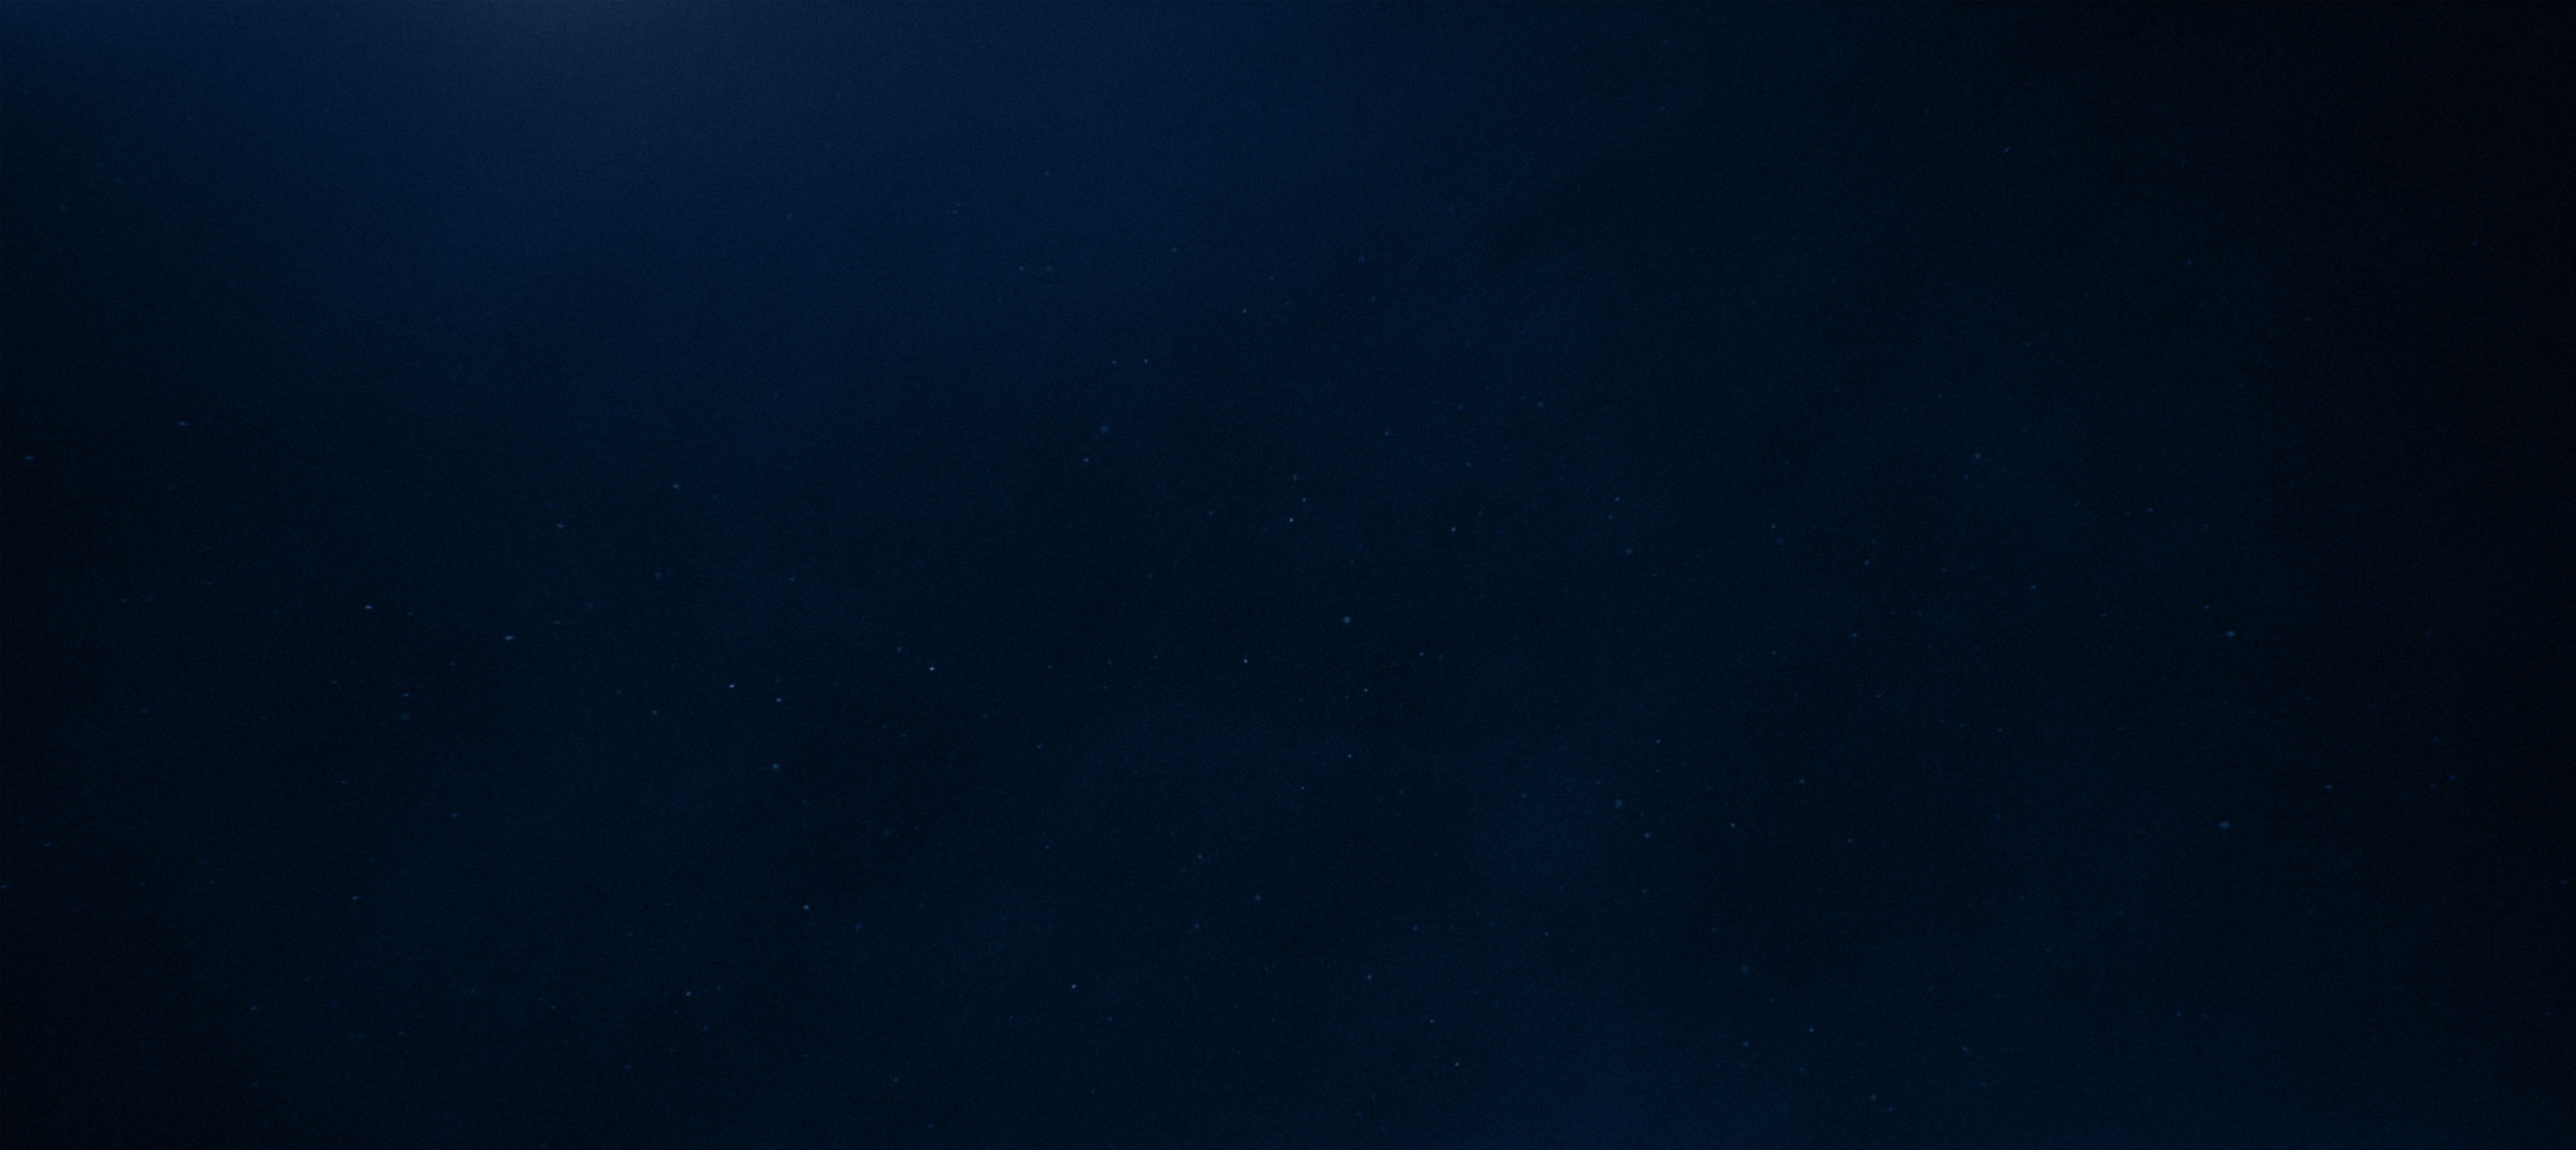 Background texture - dark blue starry sky